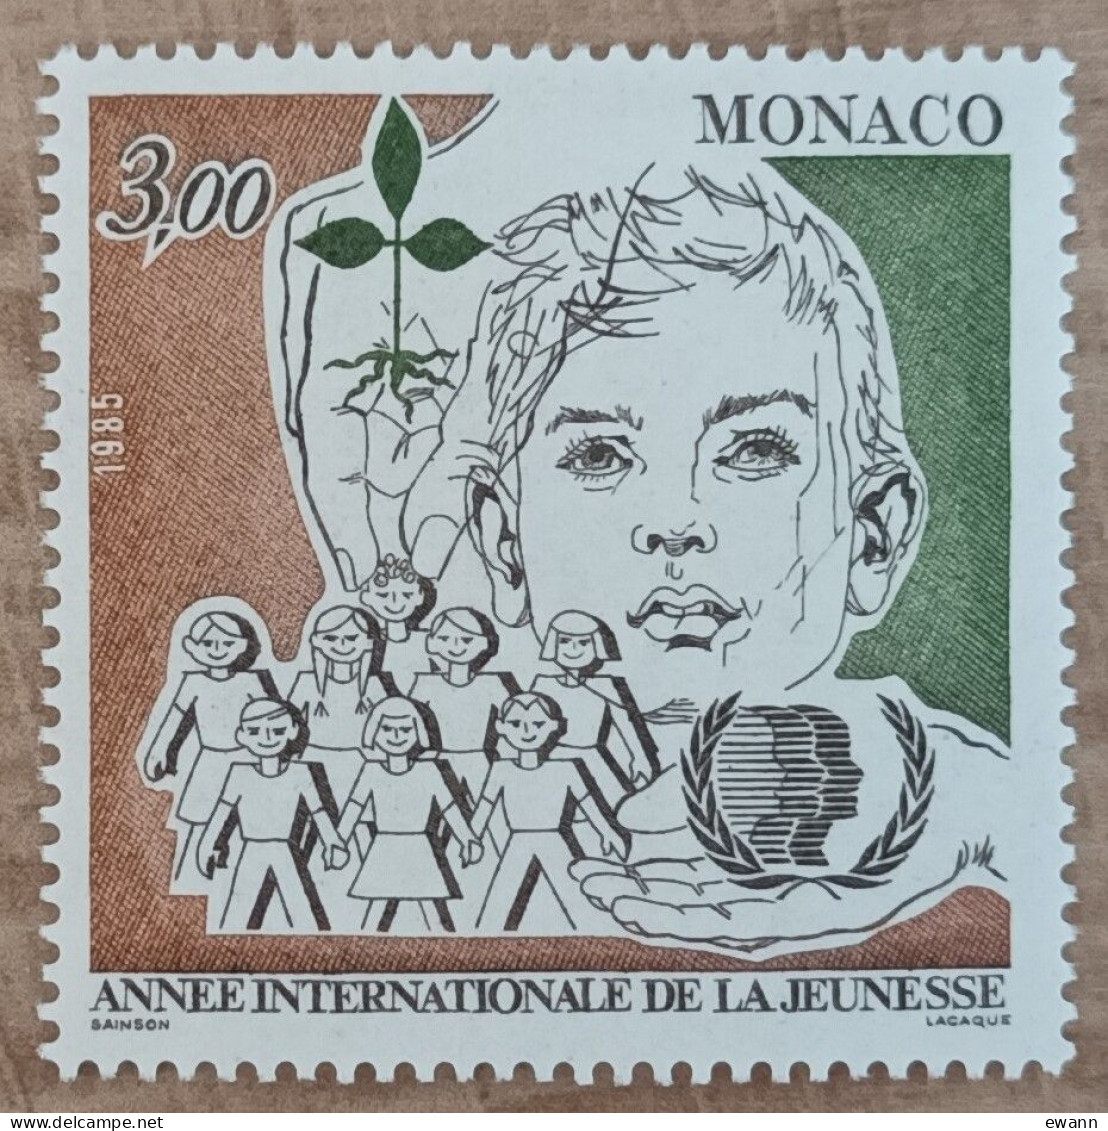 Monaco - YT N°1478 - Année Internationale De La Jeunesse - 1985 - Neuf - Ungebraucht